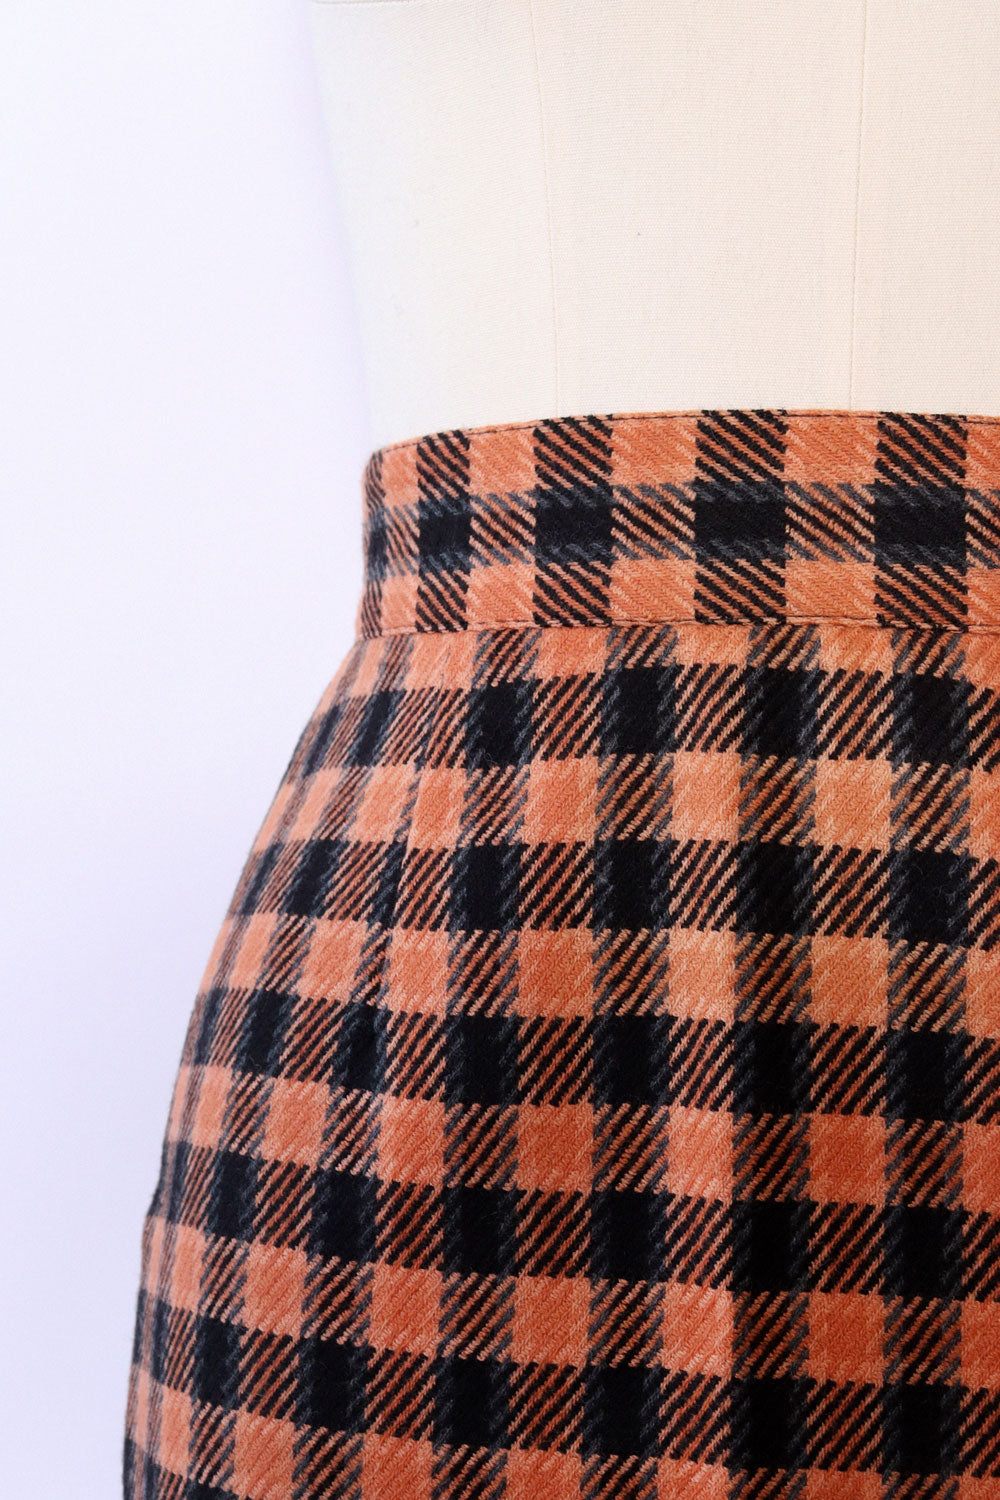 Clementine Checkered Skirt XS